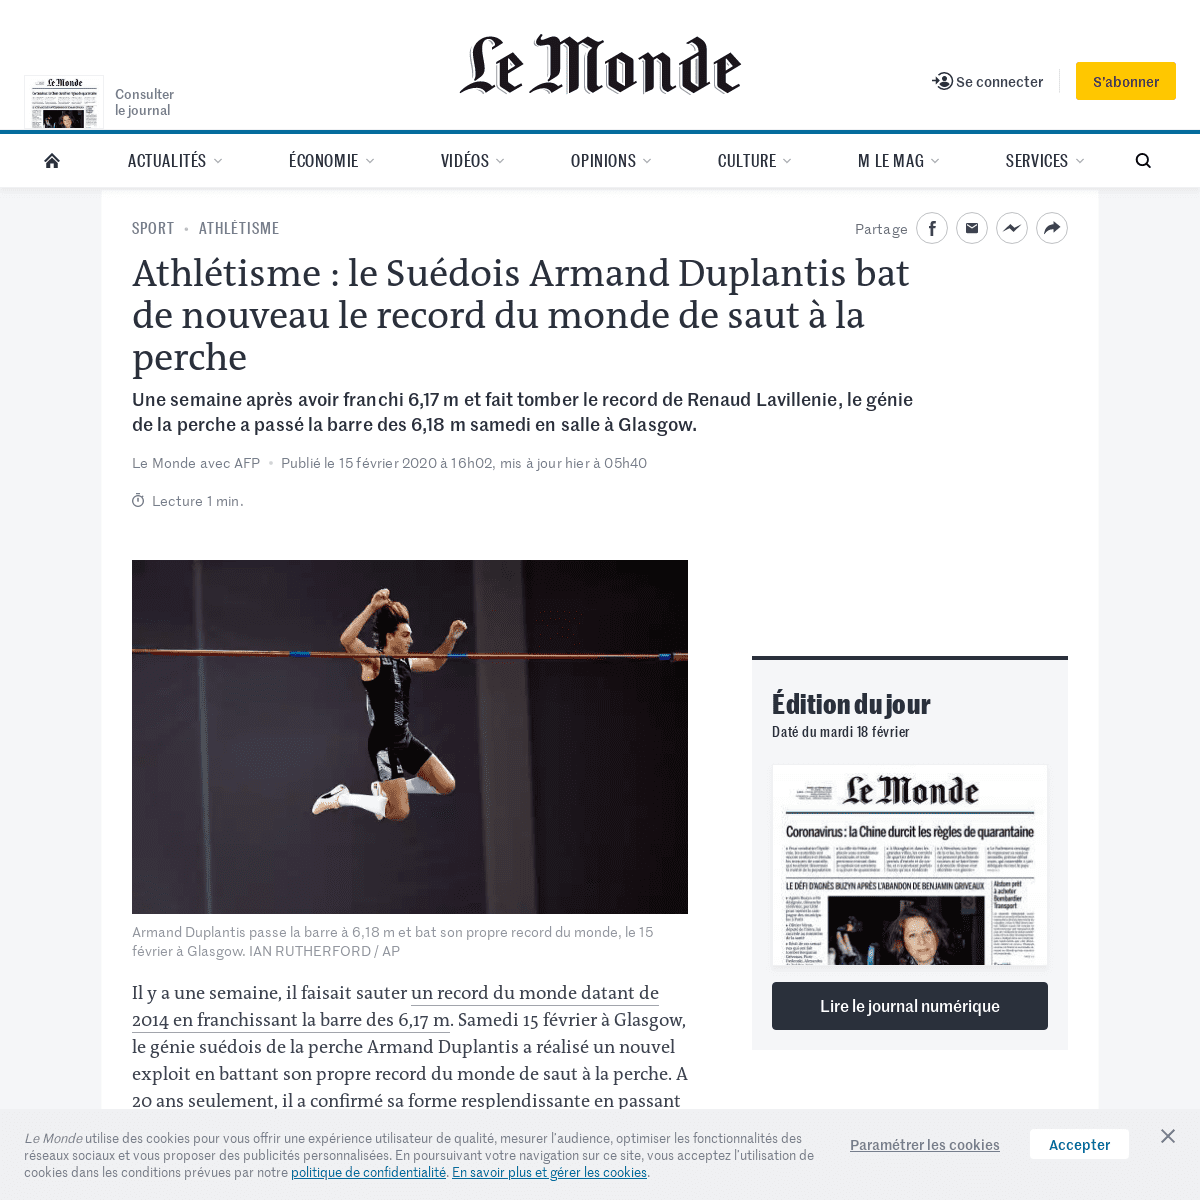 A complete backup of www.lemonde.fr/sport/article/2020/02/15/athletisme-le-suedois-armand-duplantis-bat-de-nouveau-le-record-du-